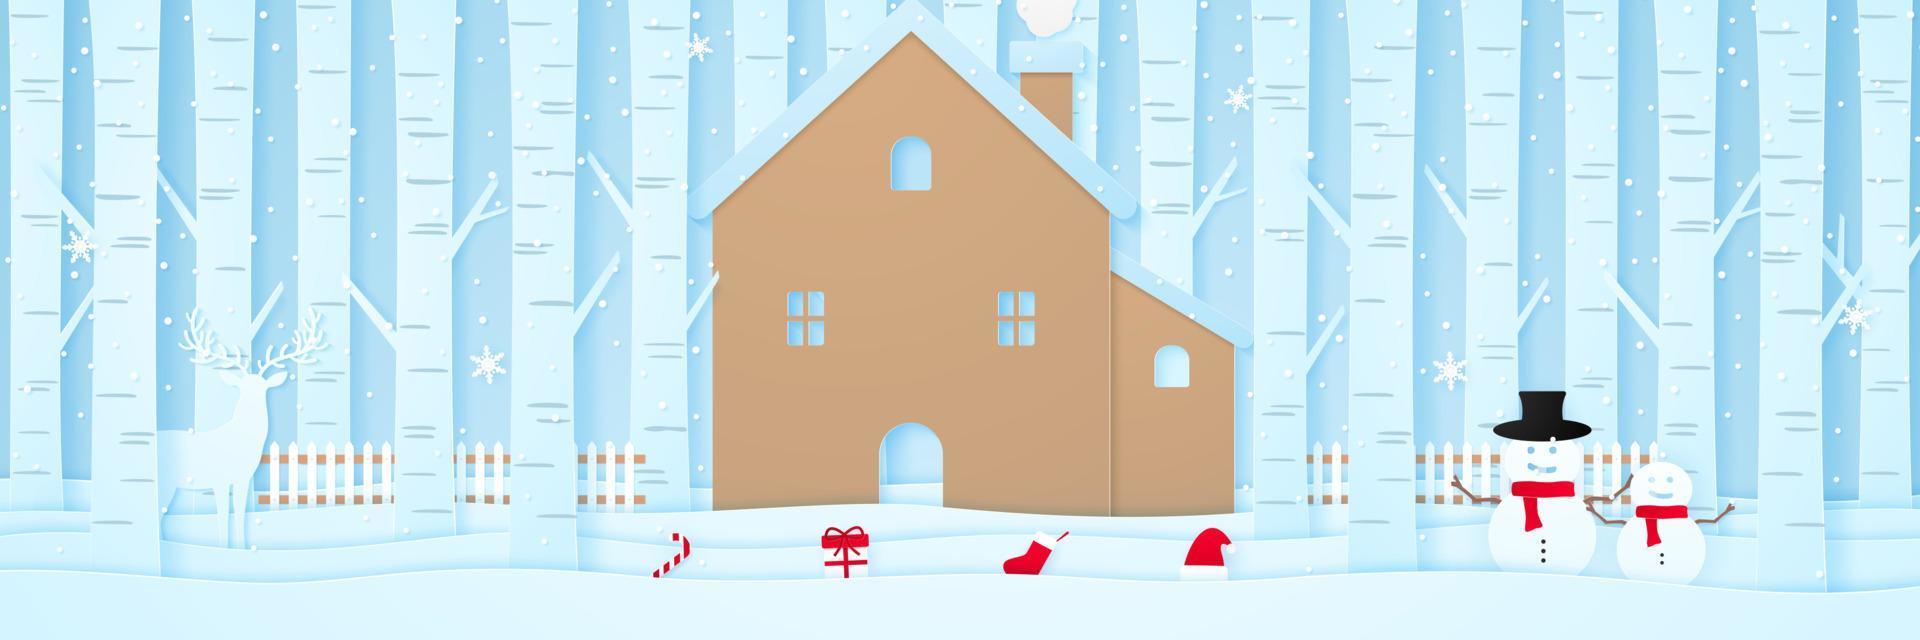 feliz natal, casa com renas, boneco de neve, coisas de natal, cerca e pinheiros na neve na paisagem de inverno com neve caindo, estilo de arte em papel vetor